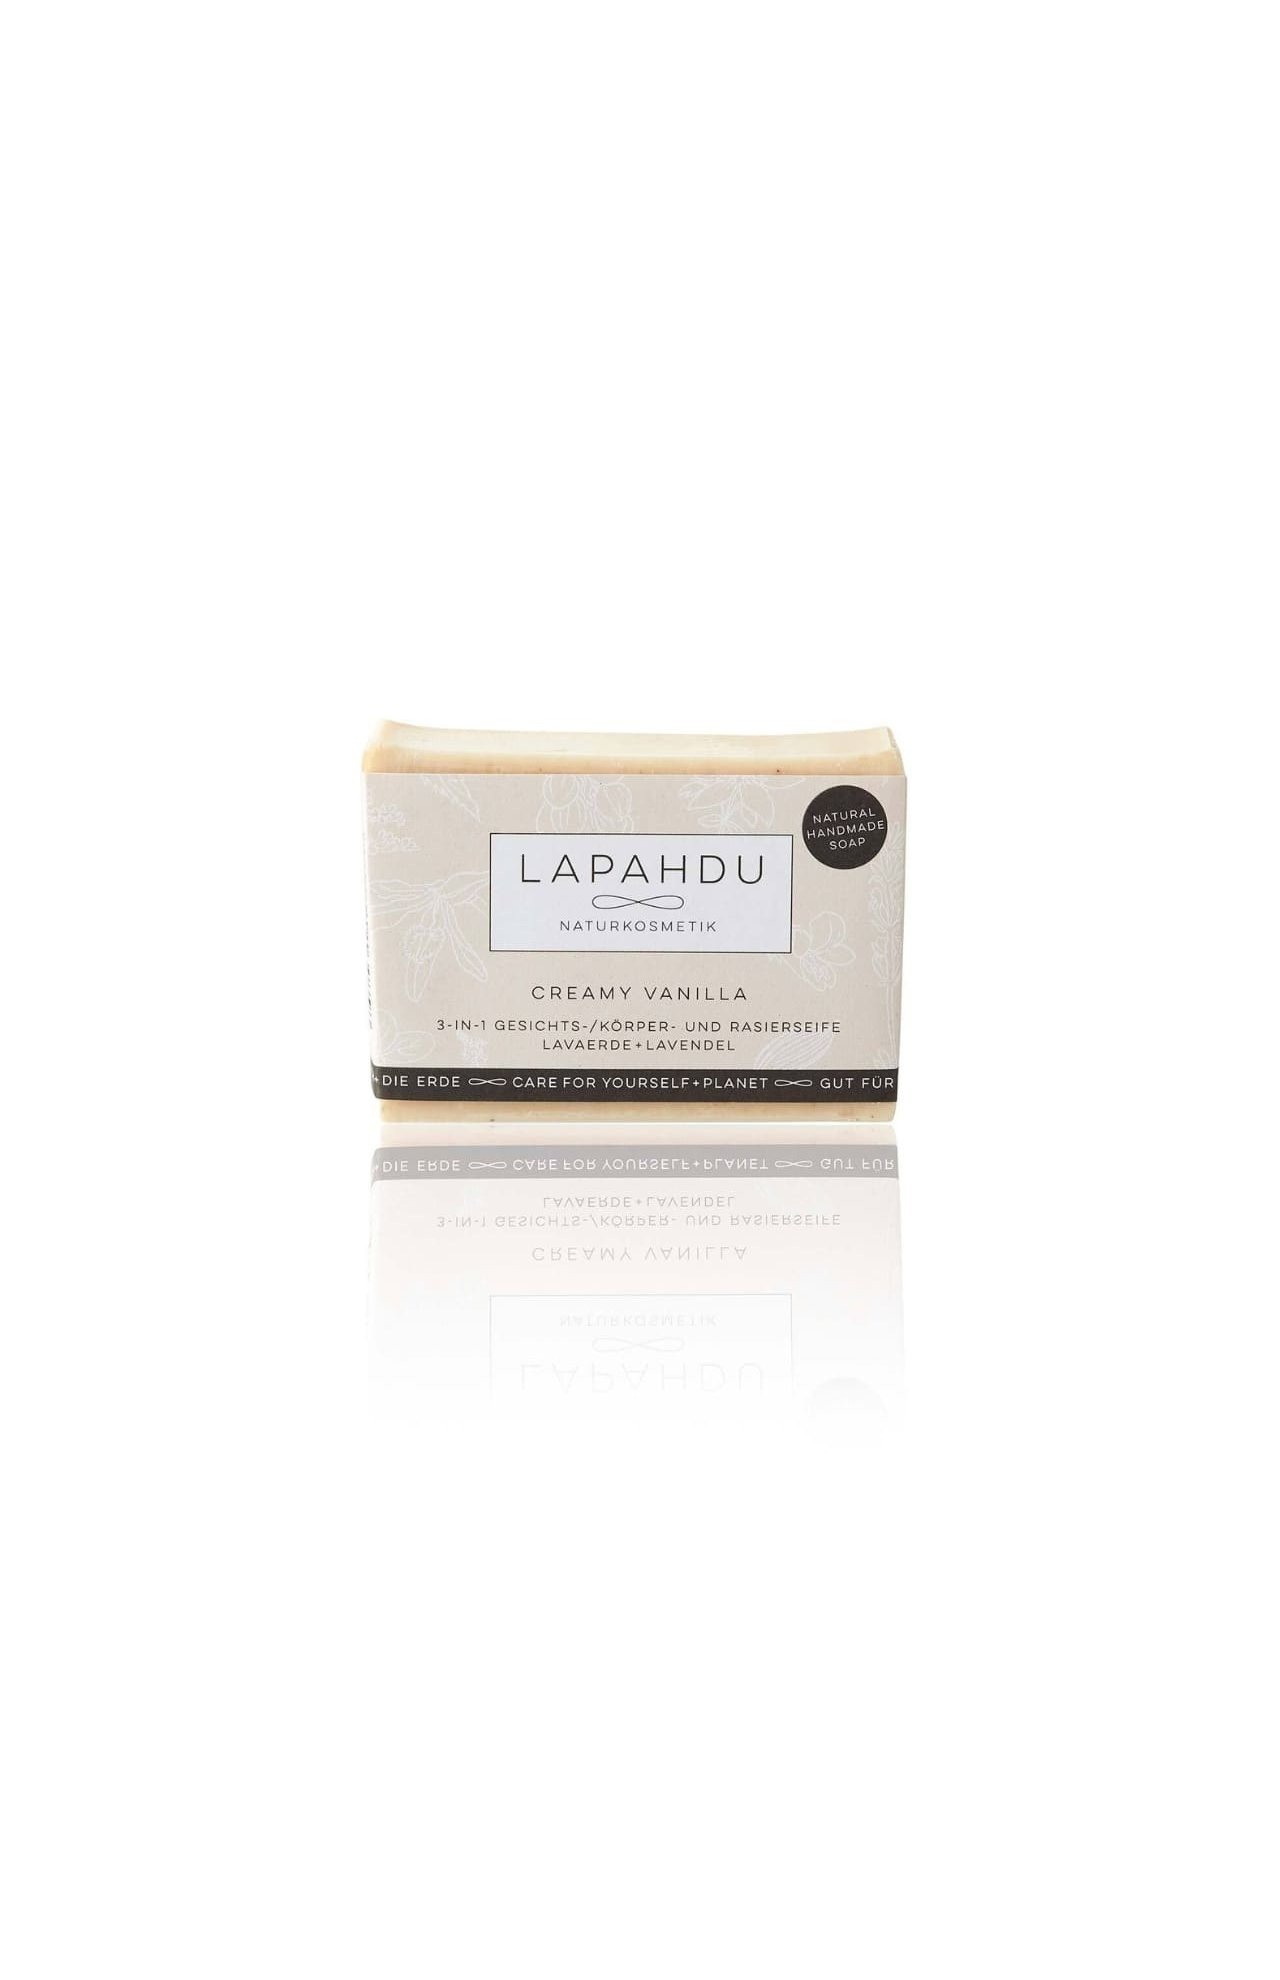 LAPAHDU Naturkosmetik Naturseife mit Vanille + Lavendel Vegane Creme Seife für Gesicht Körper + Rasur Zero Waste 100 g